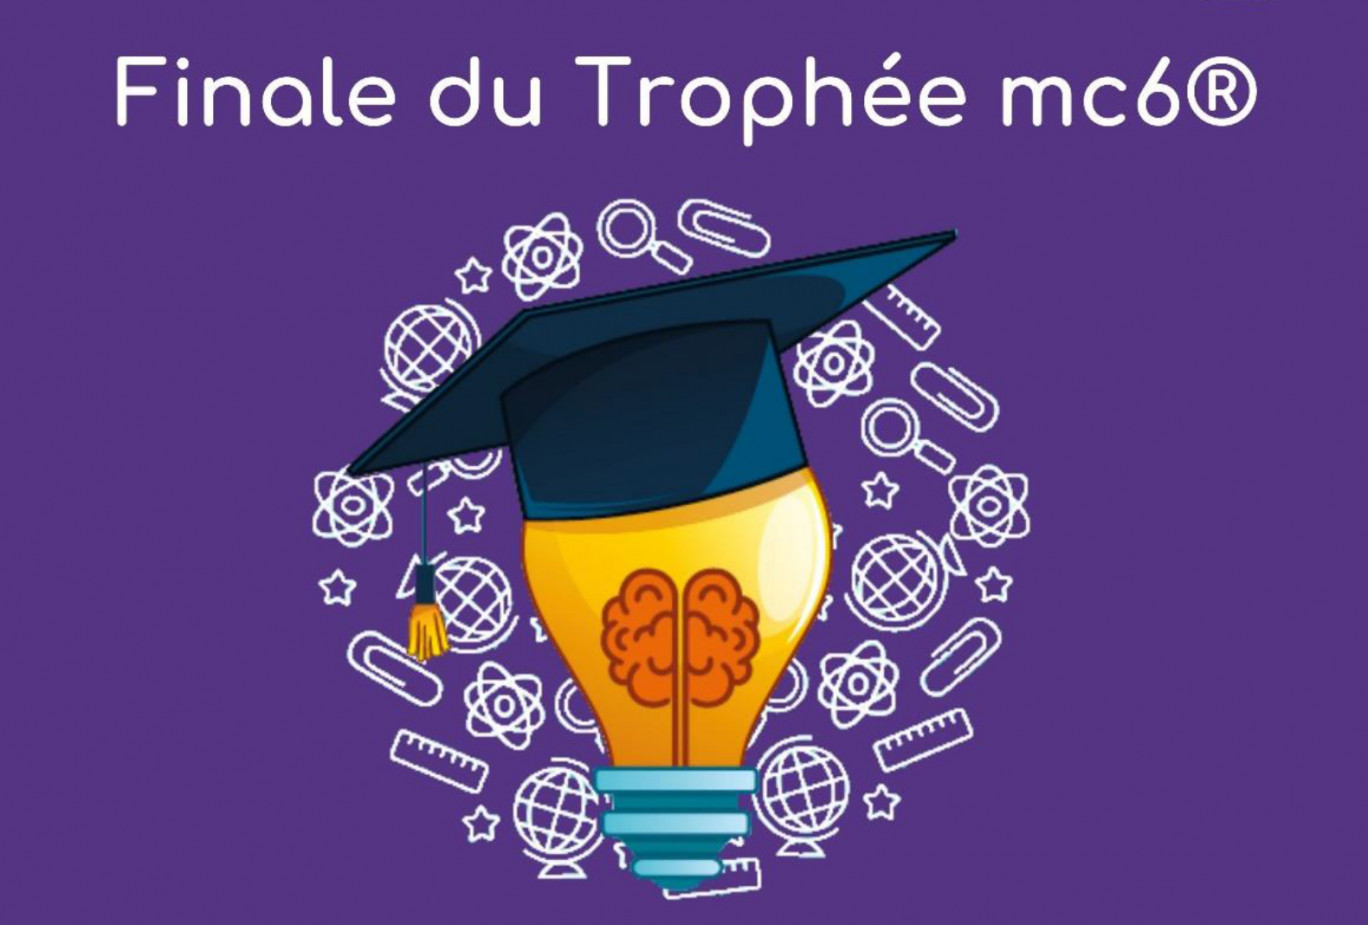 Trophée mc6® : Finale le 4 mars 2020 à Metz